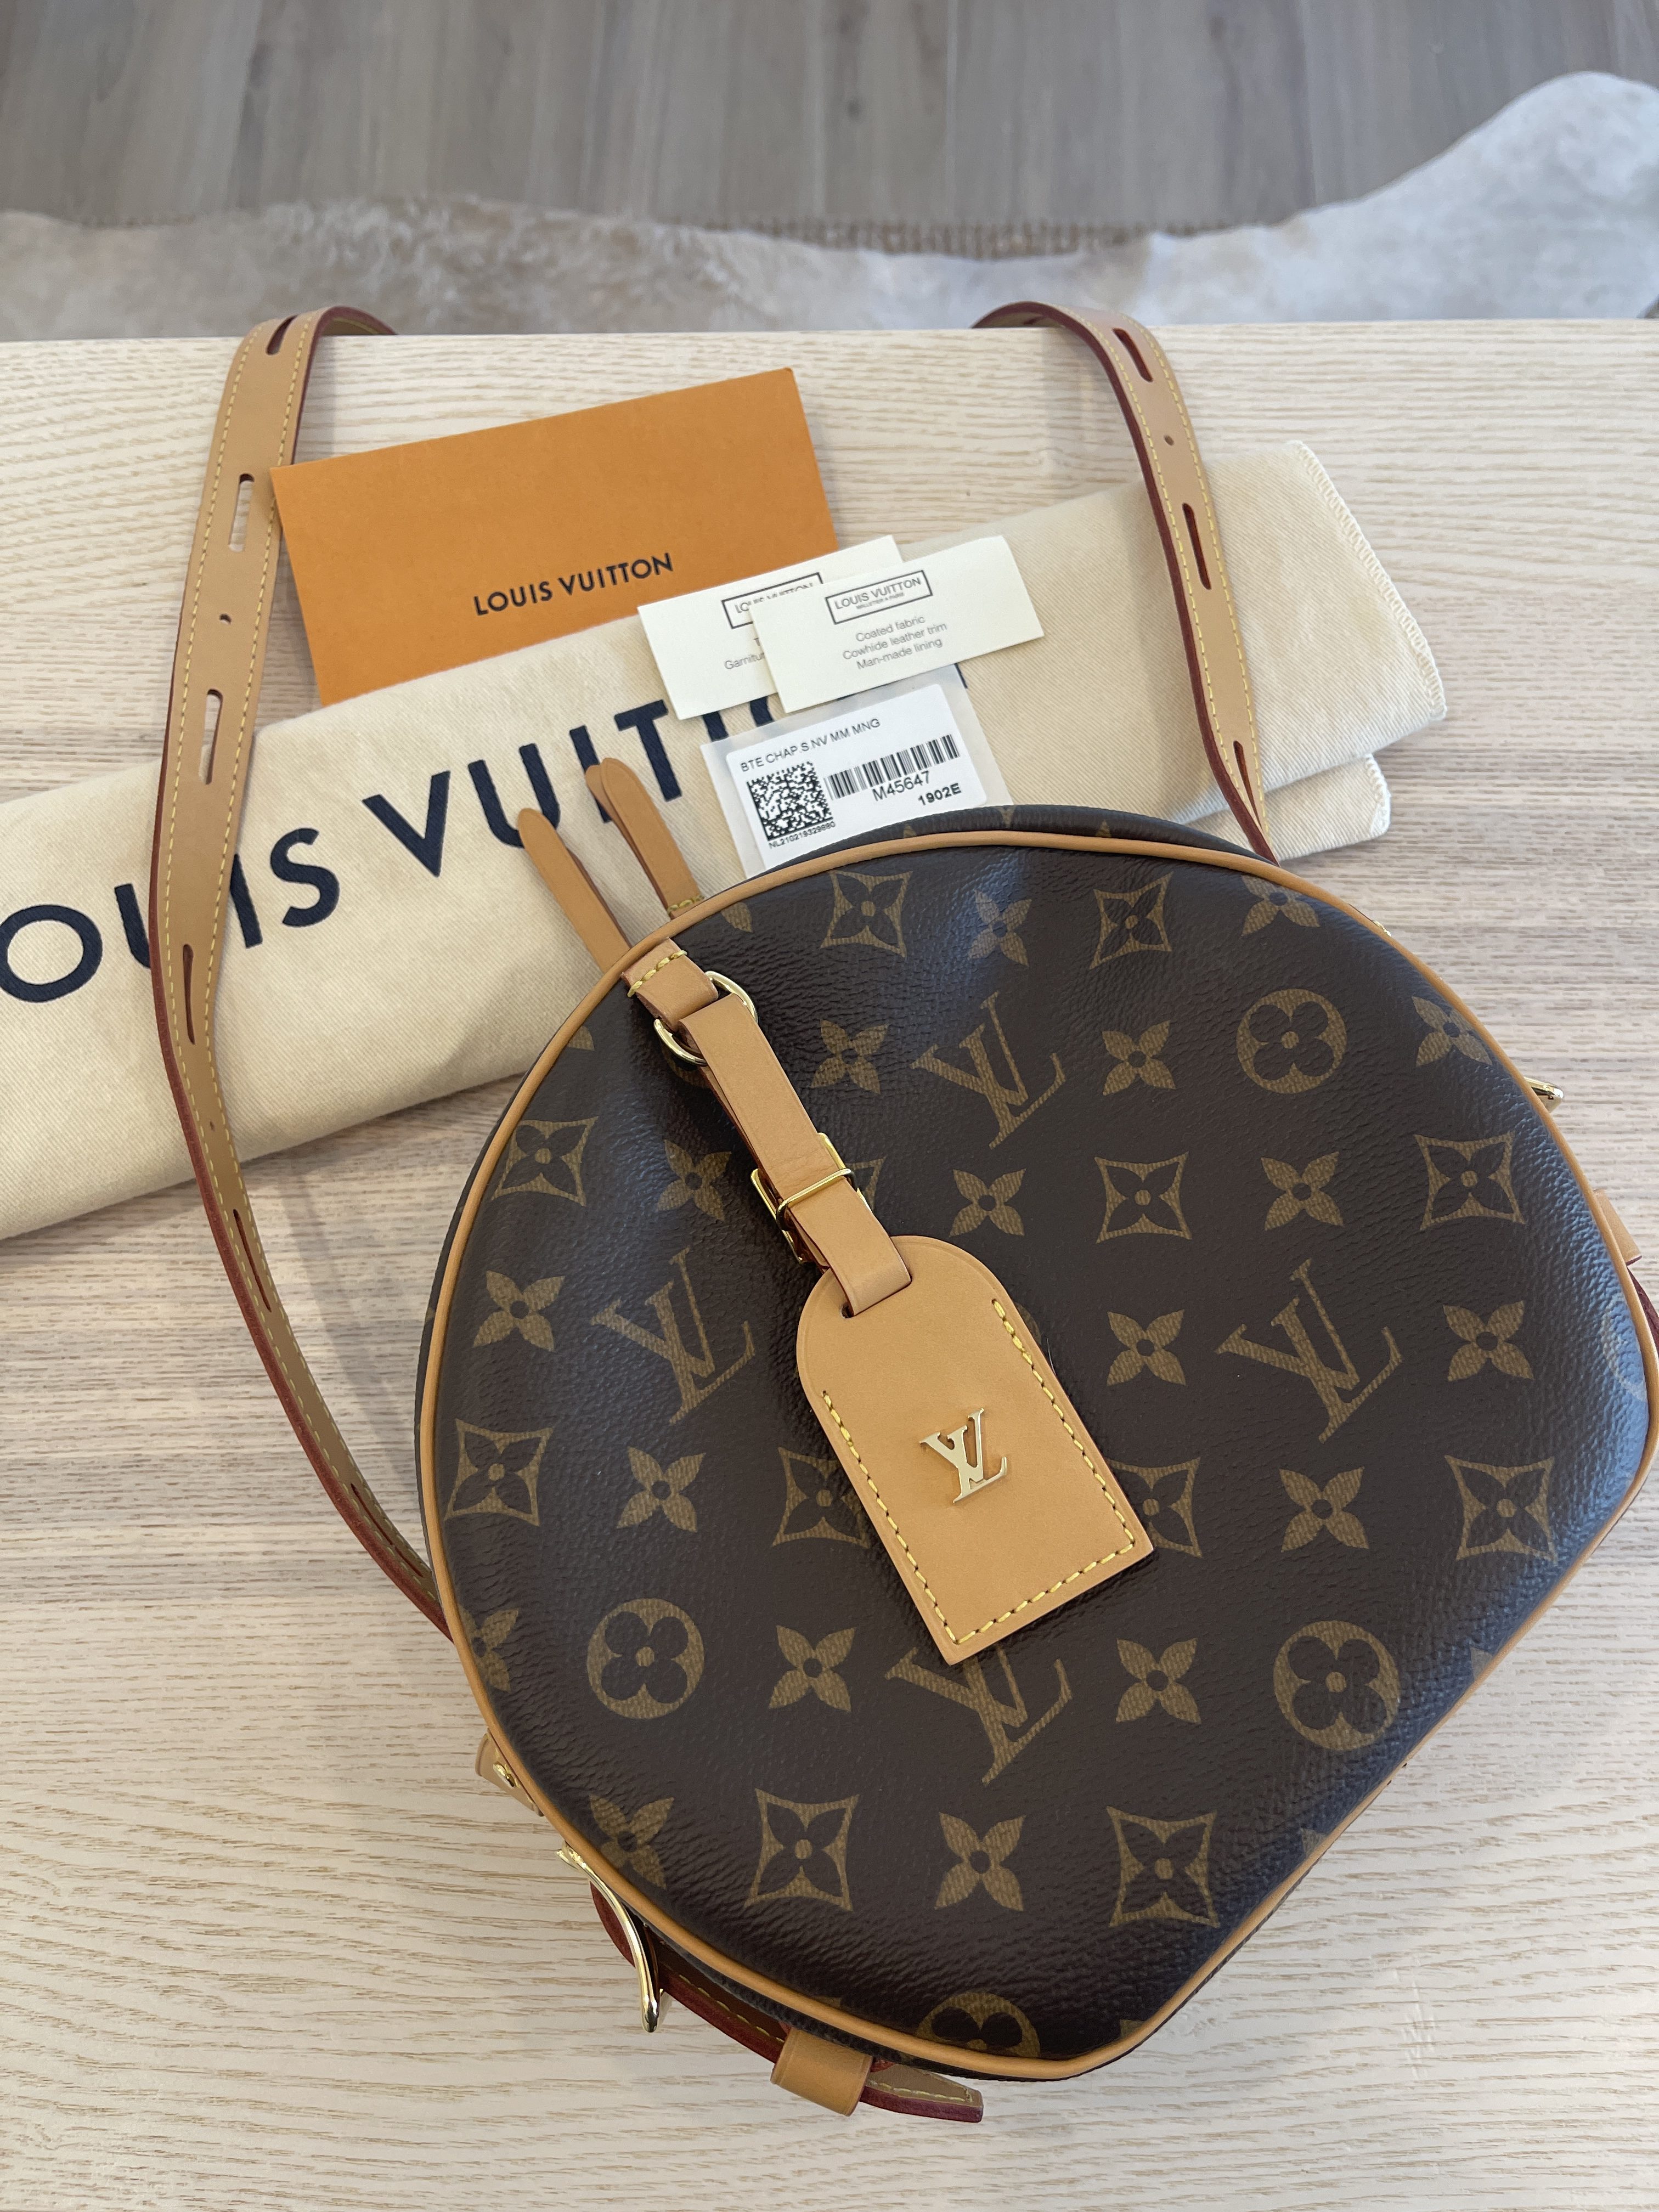 Louis Vuitton Boute Chapeau Couple Bag Review 